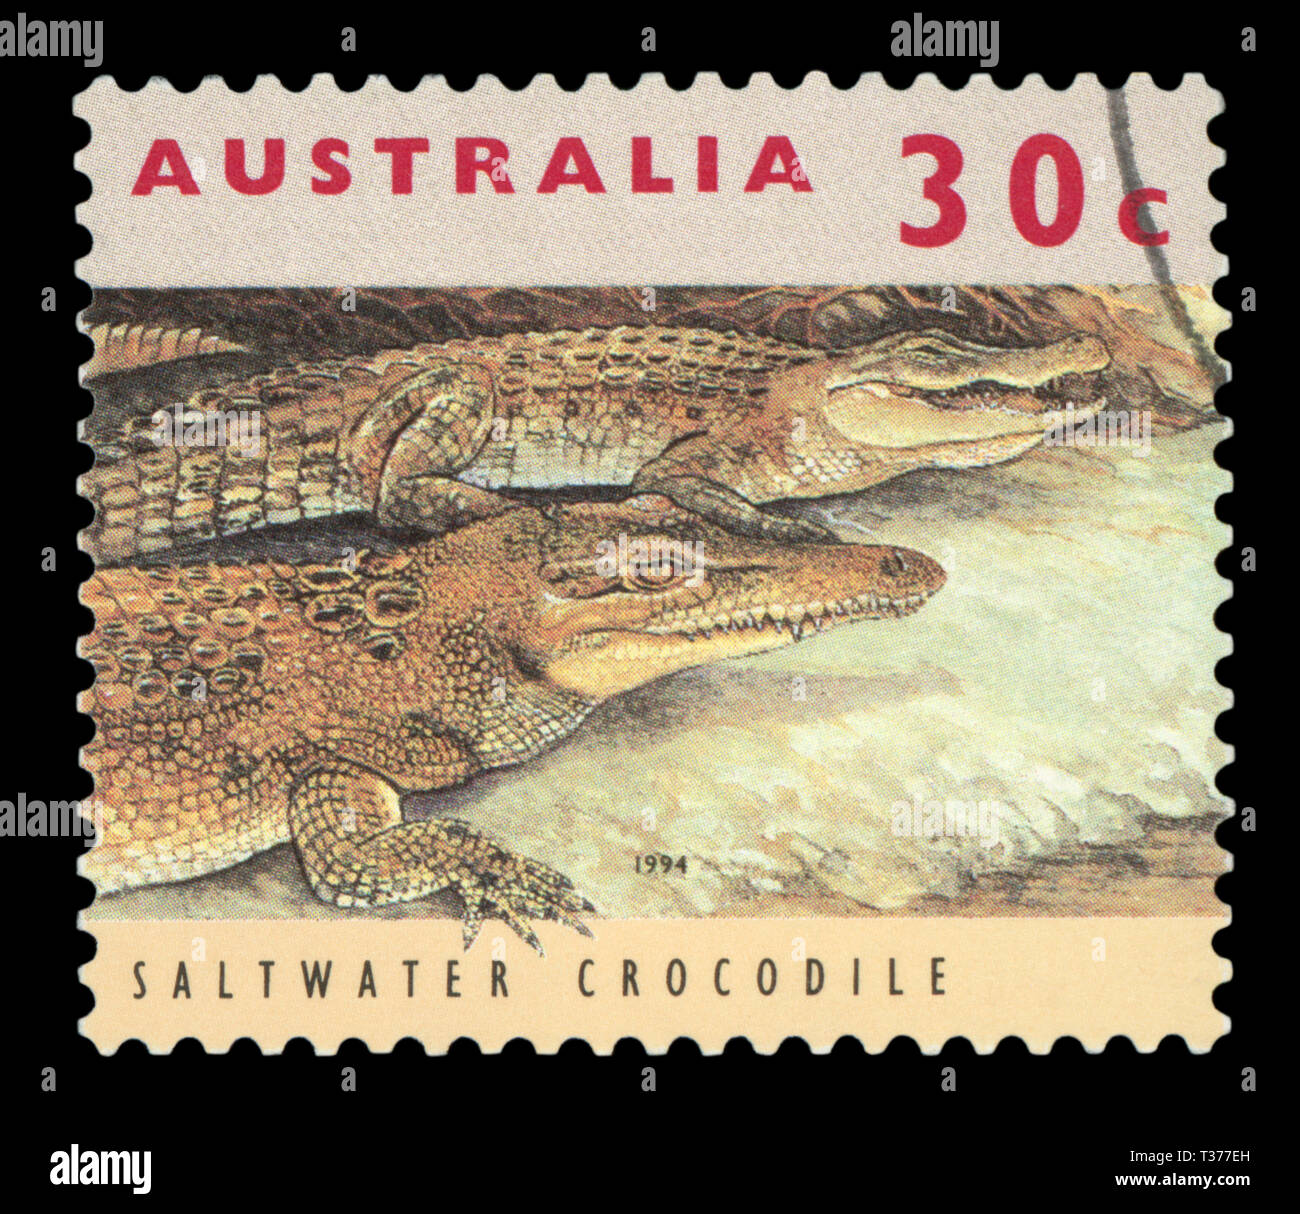 L'AUSTRALIE - circa 1994 : timbre imprimé en Australie montre saltwater crocodile, vers 1994. Banque D'Images